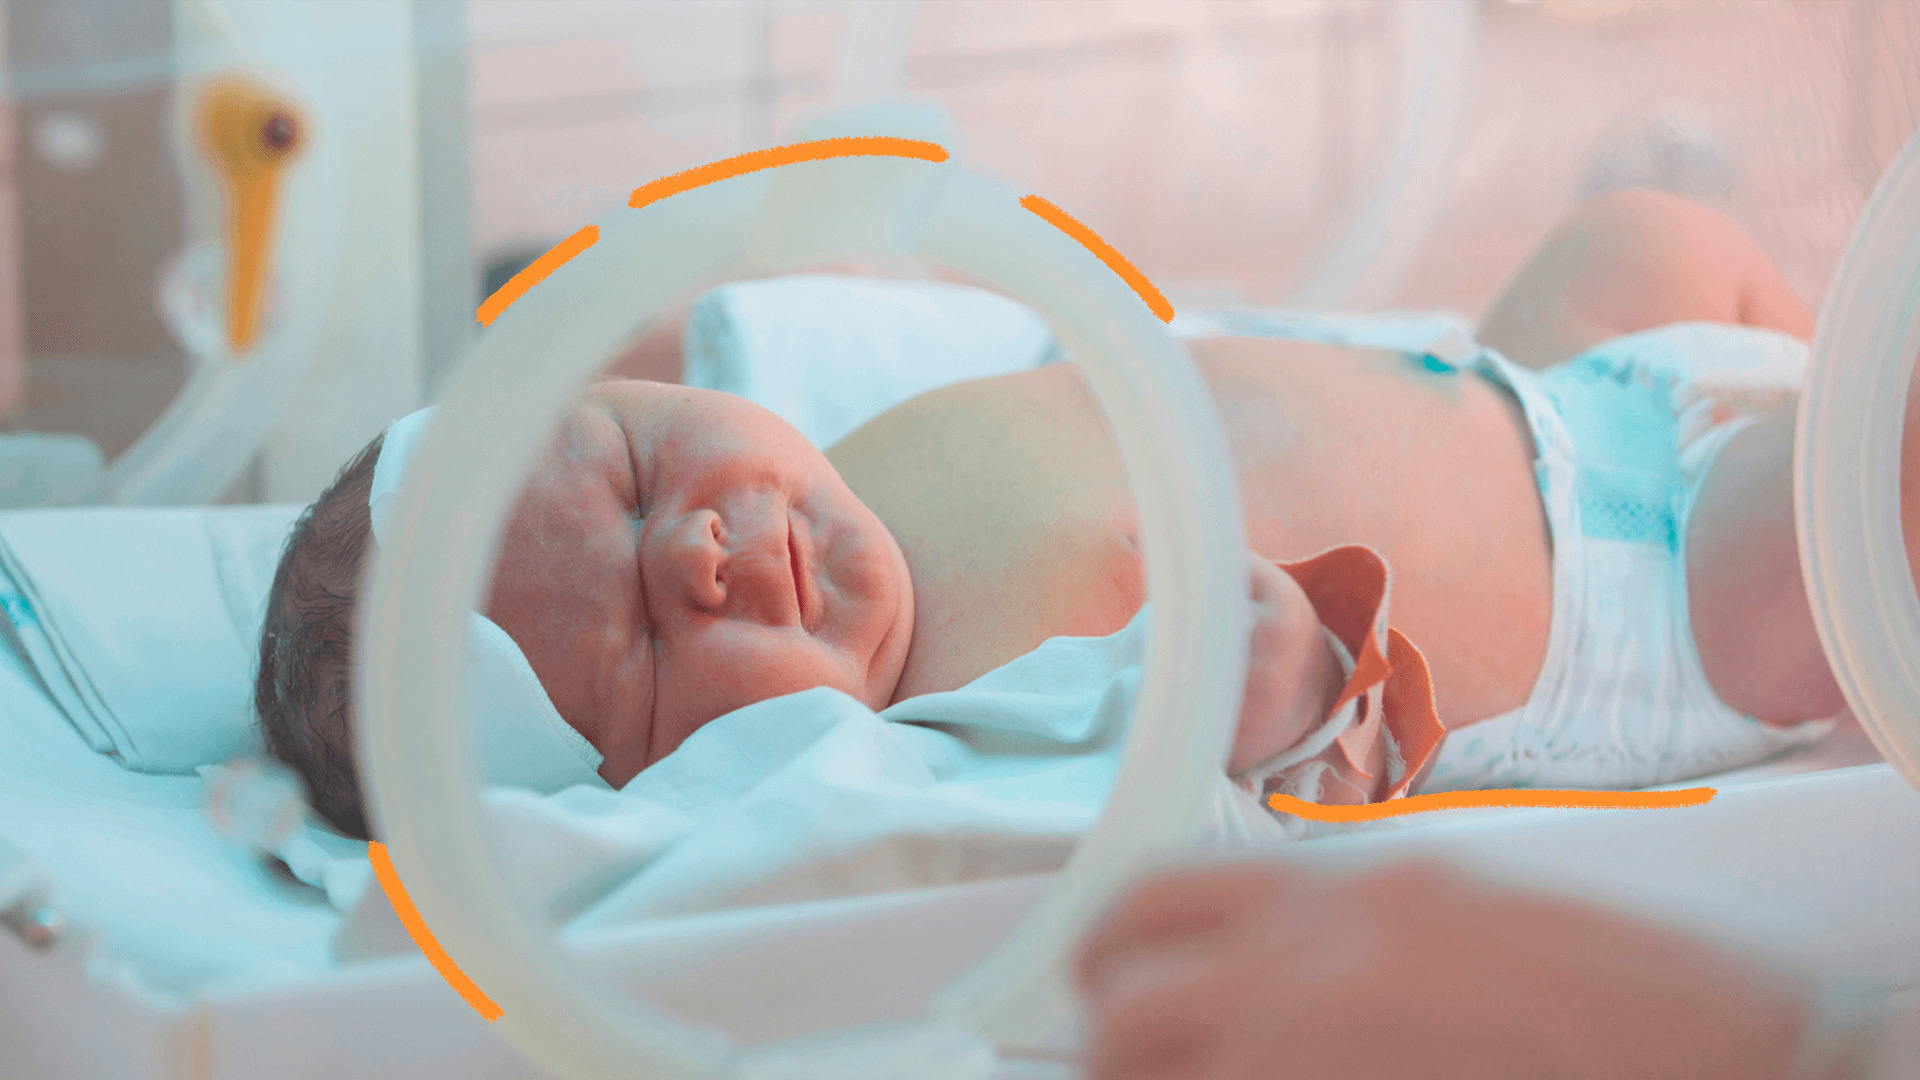 Imagem mostra um bebê branco em uma incubadora hospitalar. A matéria fala sobre a relação das eleições e a mortalidade infantil.